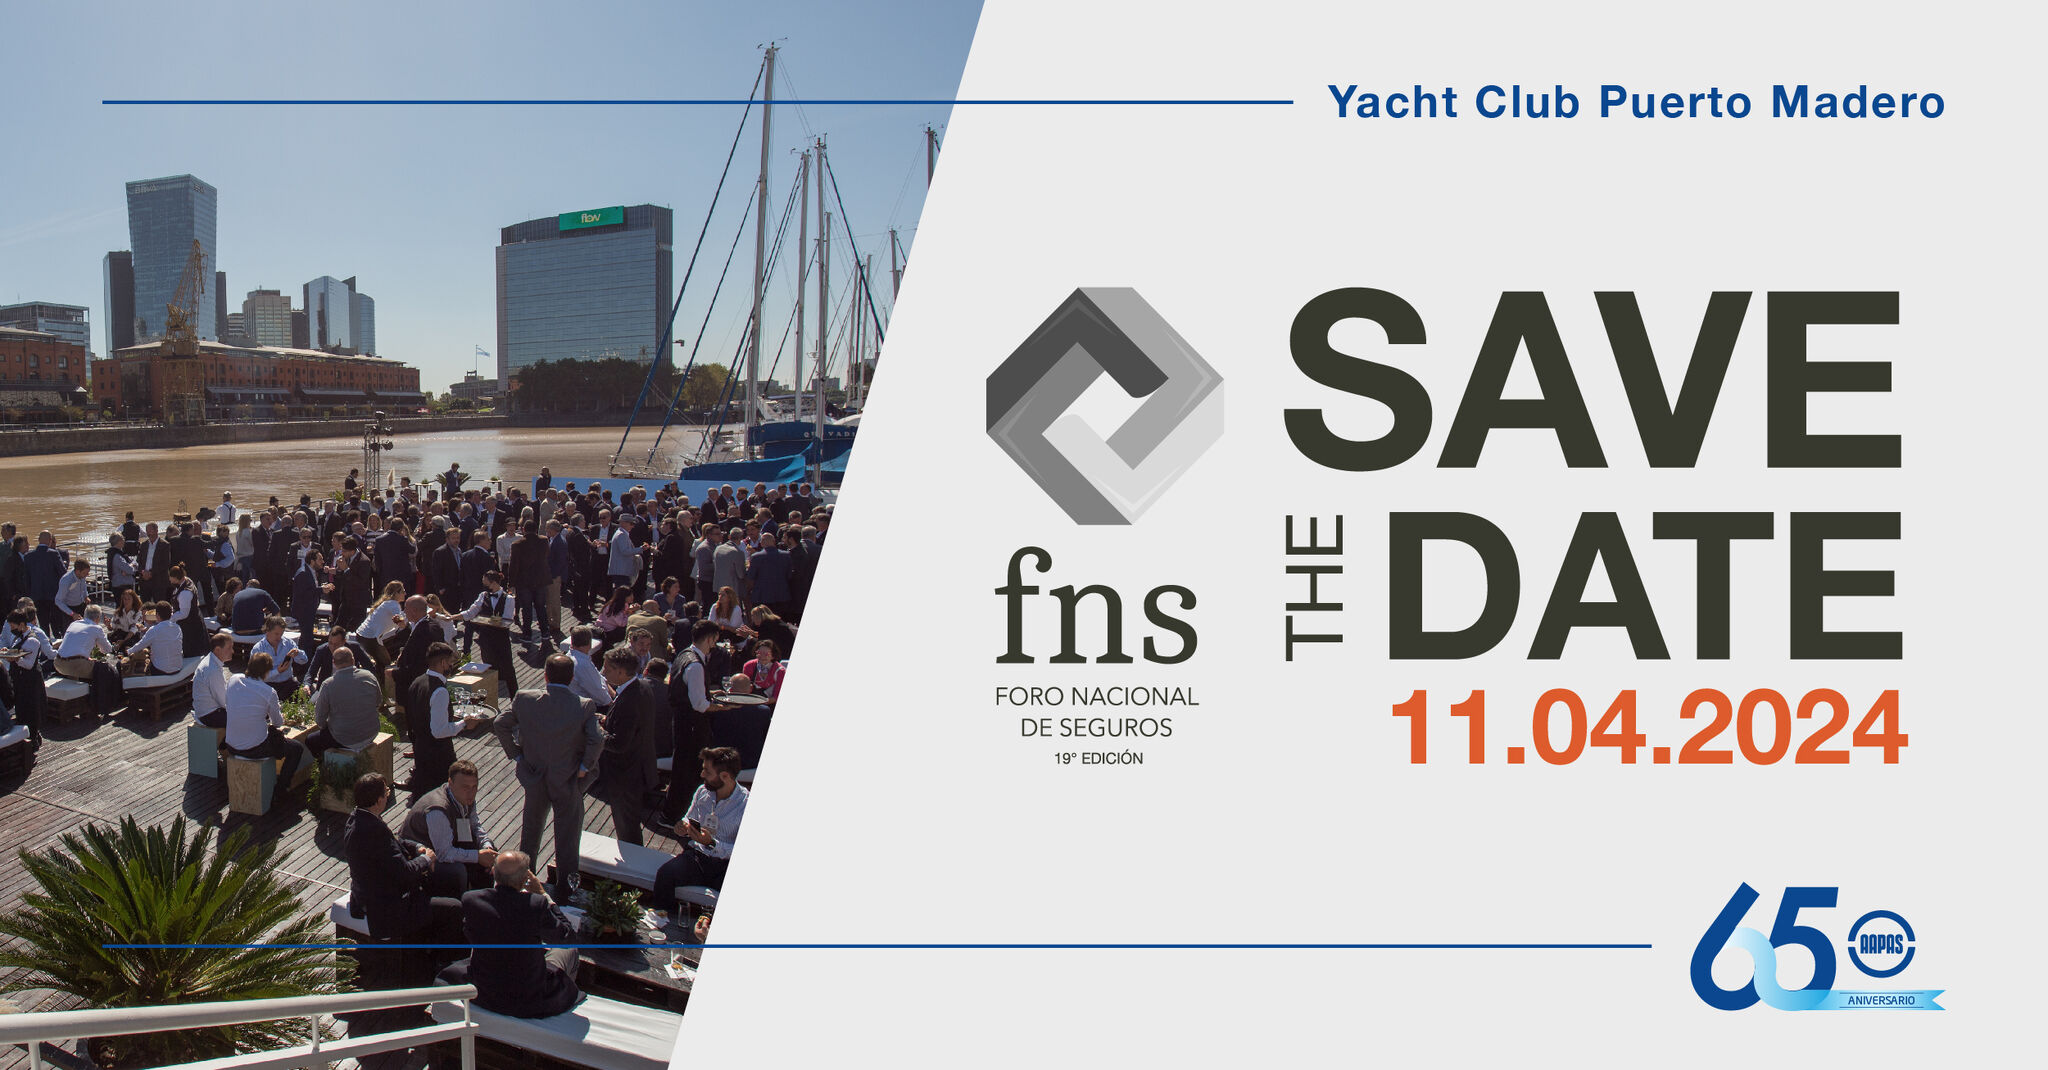 Se llevará a cabo el 11 de abril de 2024 en el Yacht Club Puerto Madero